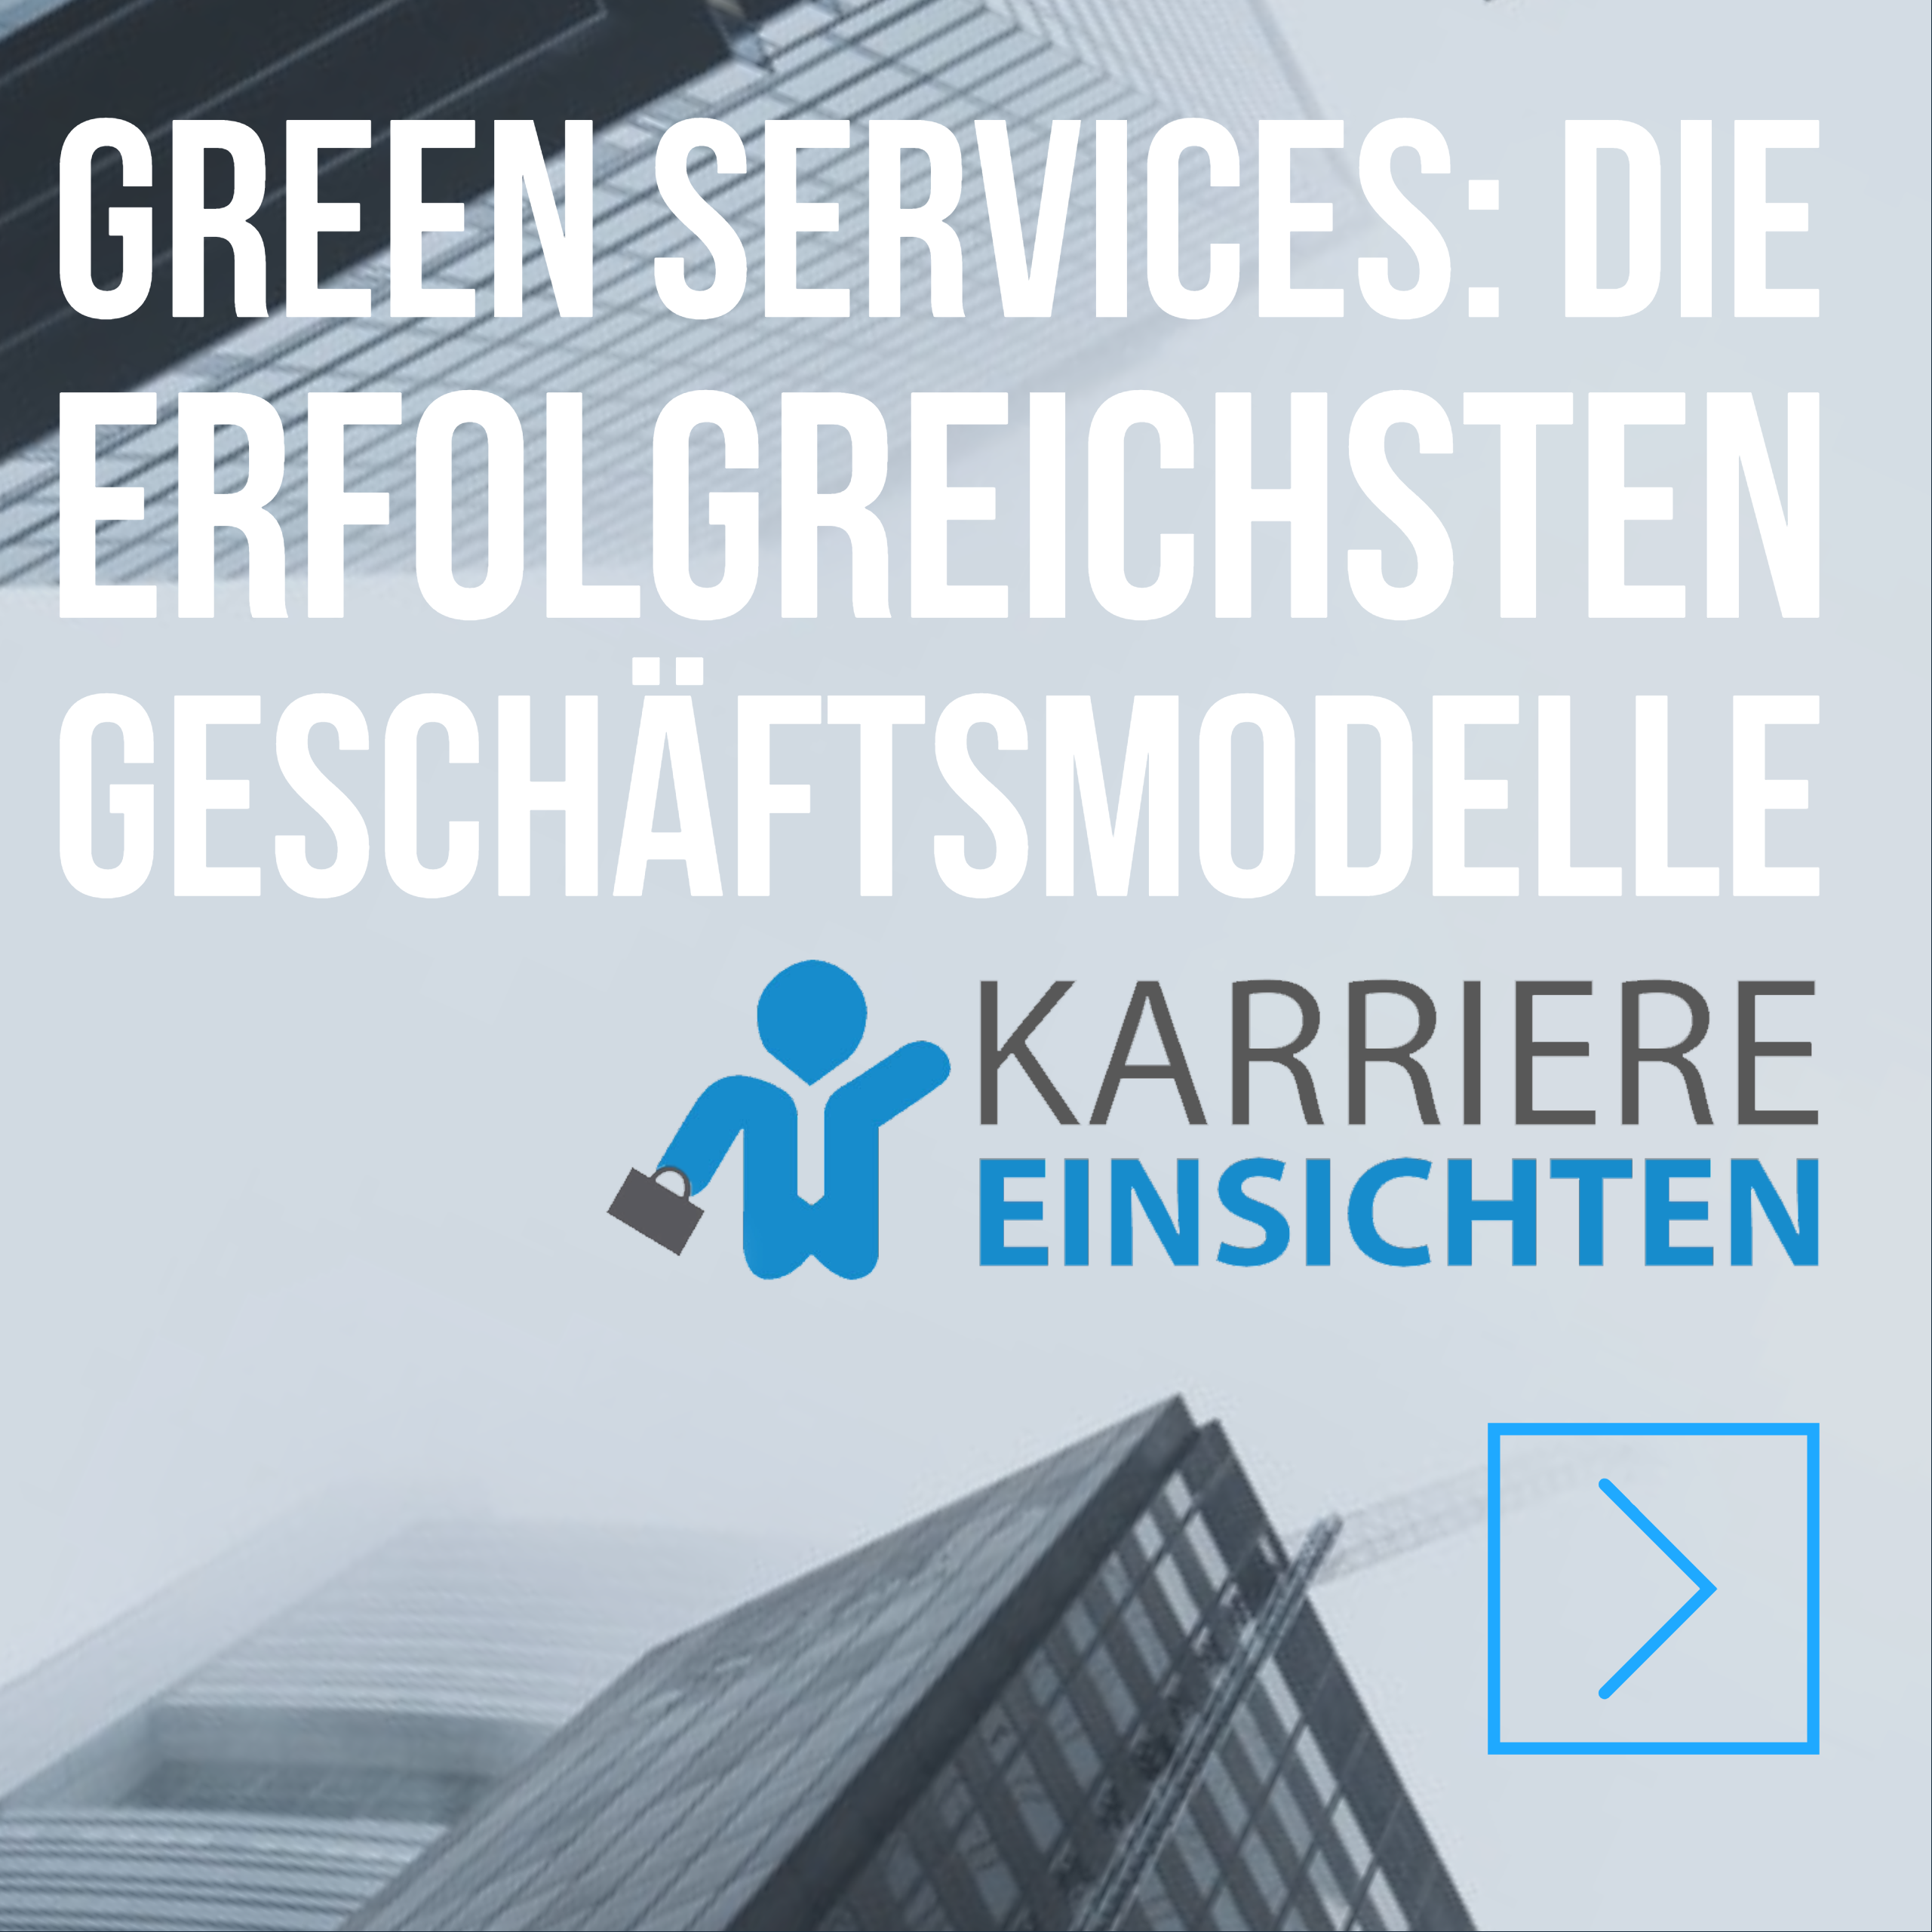 Green Services: Die erfolgreichsten Geschäftsmodelle